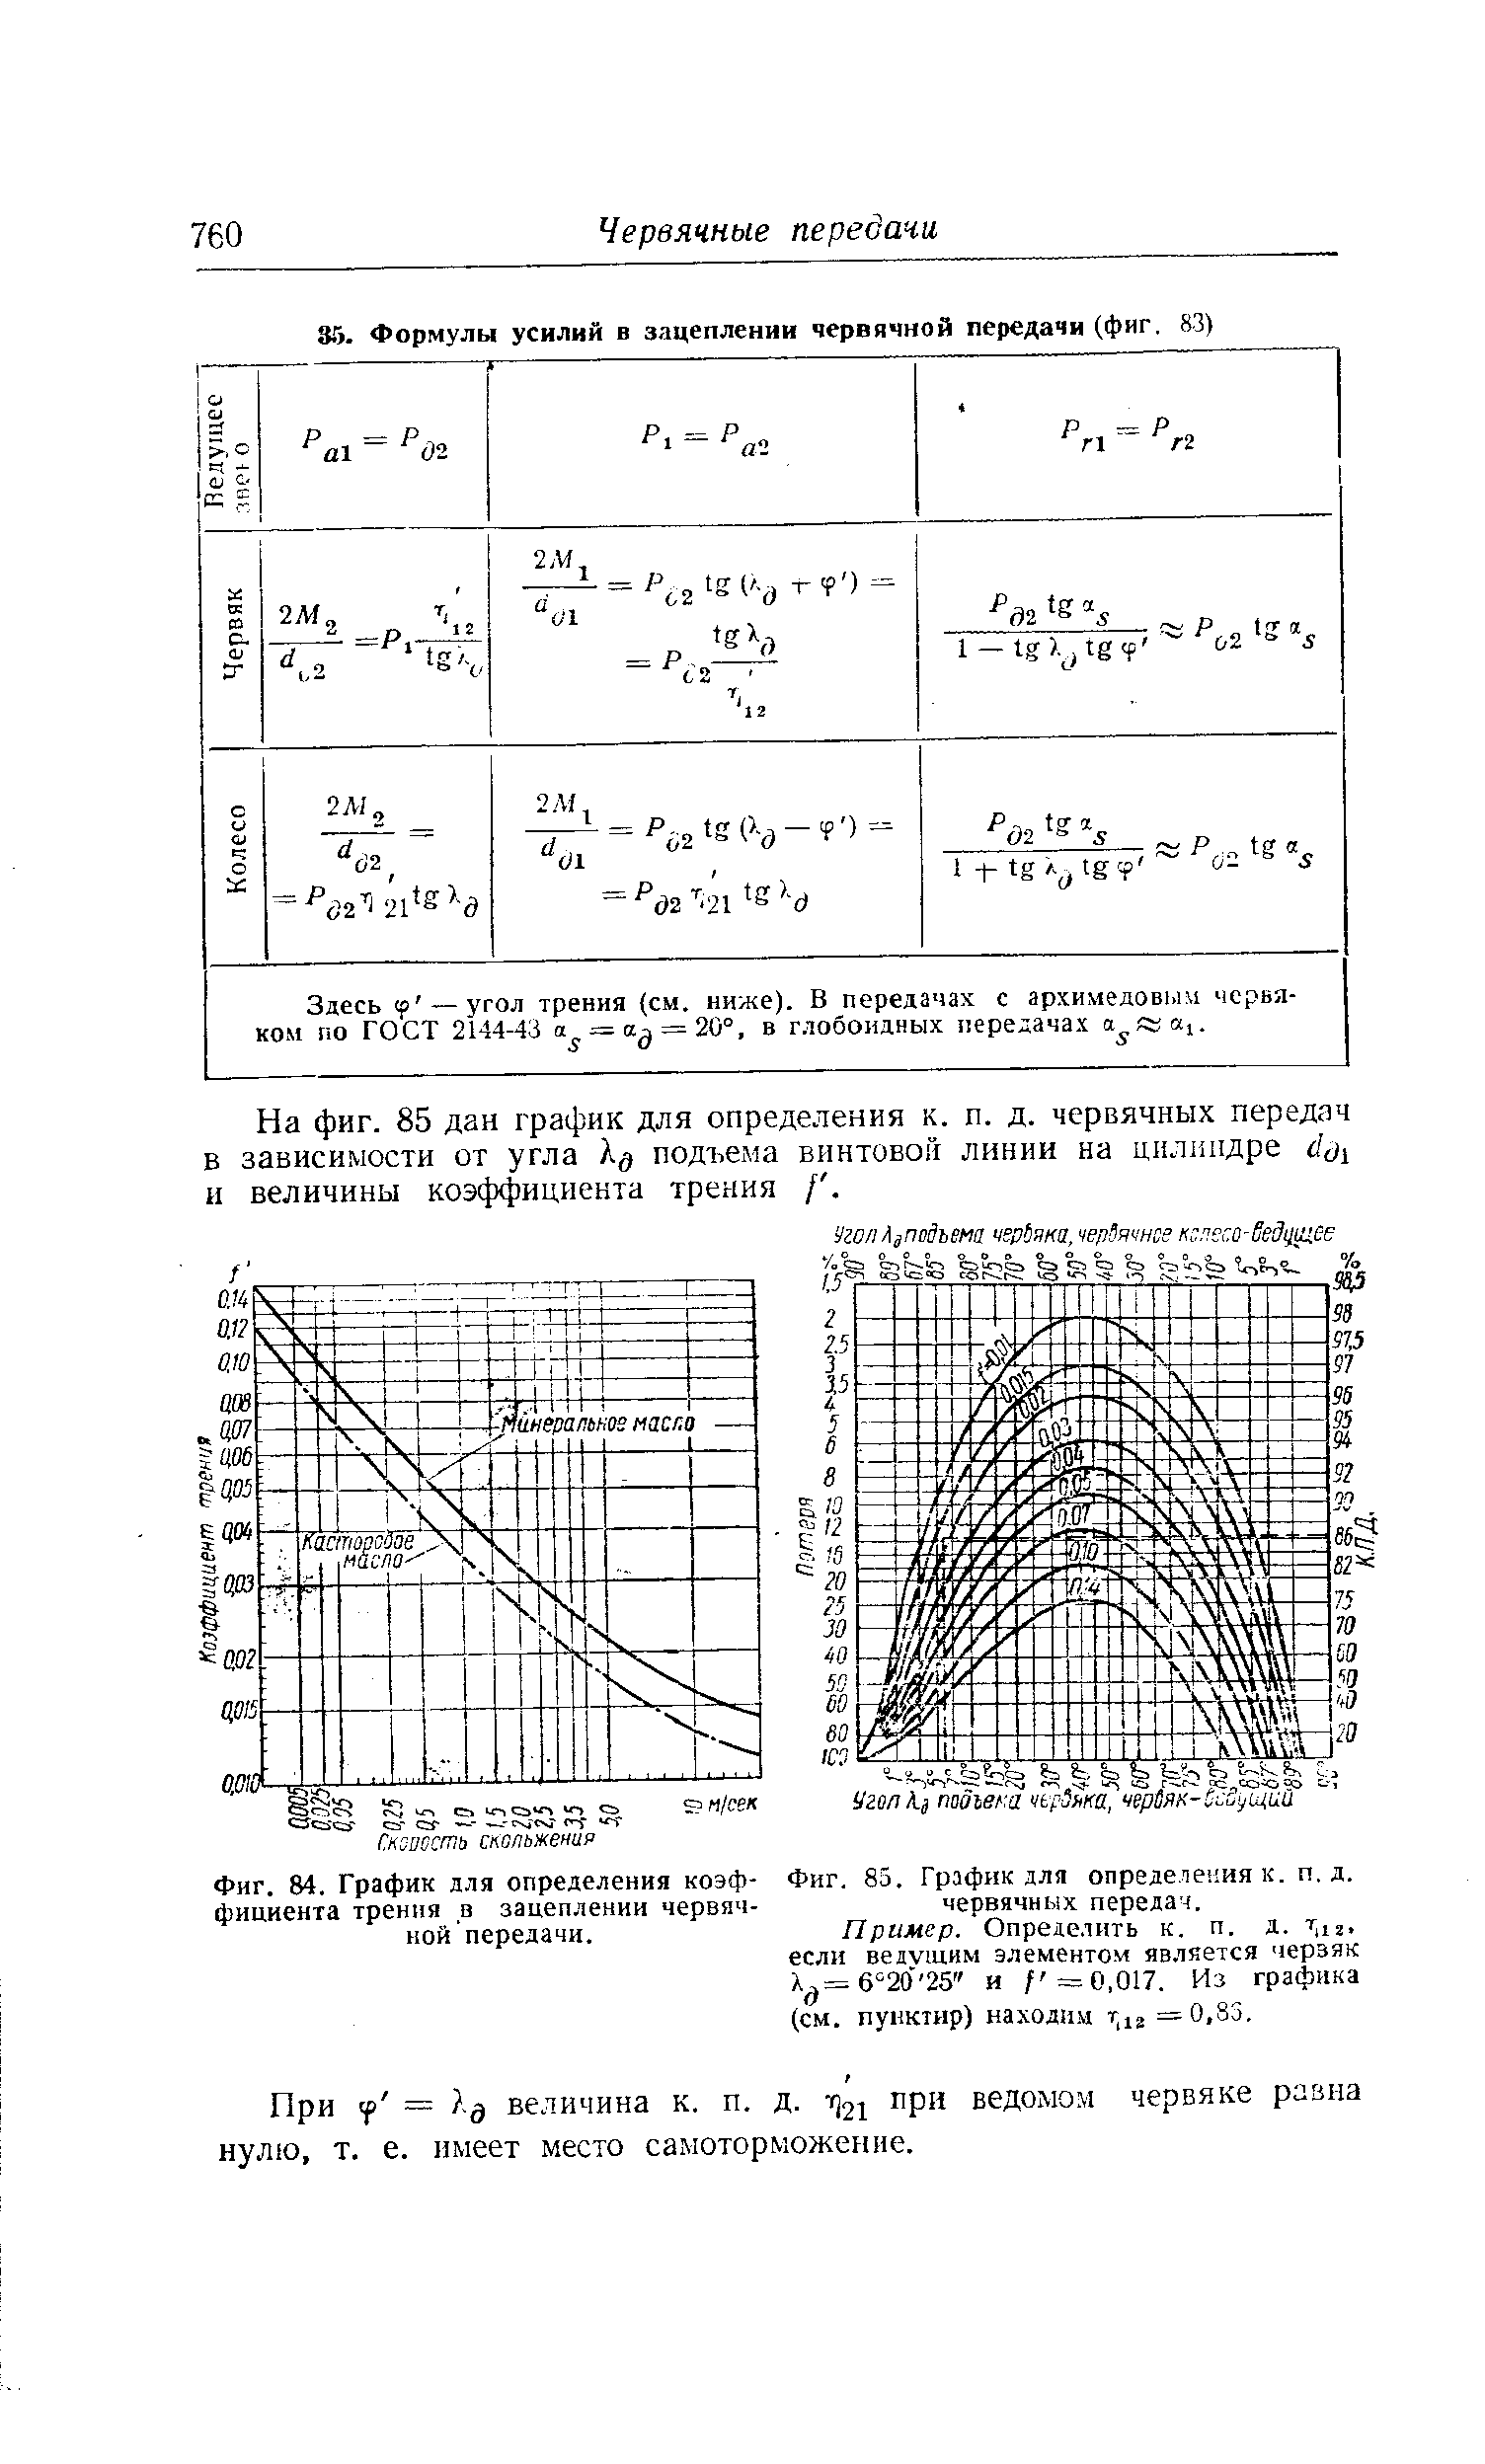 Фиг. 85. График для определения к. п. д. червячных передач.
